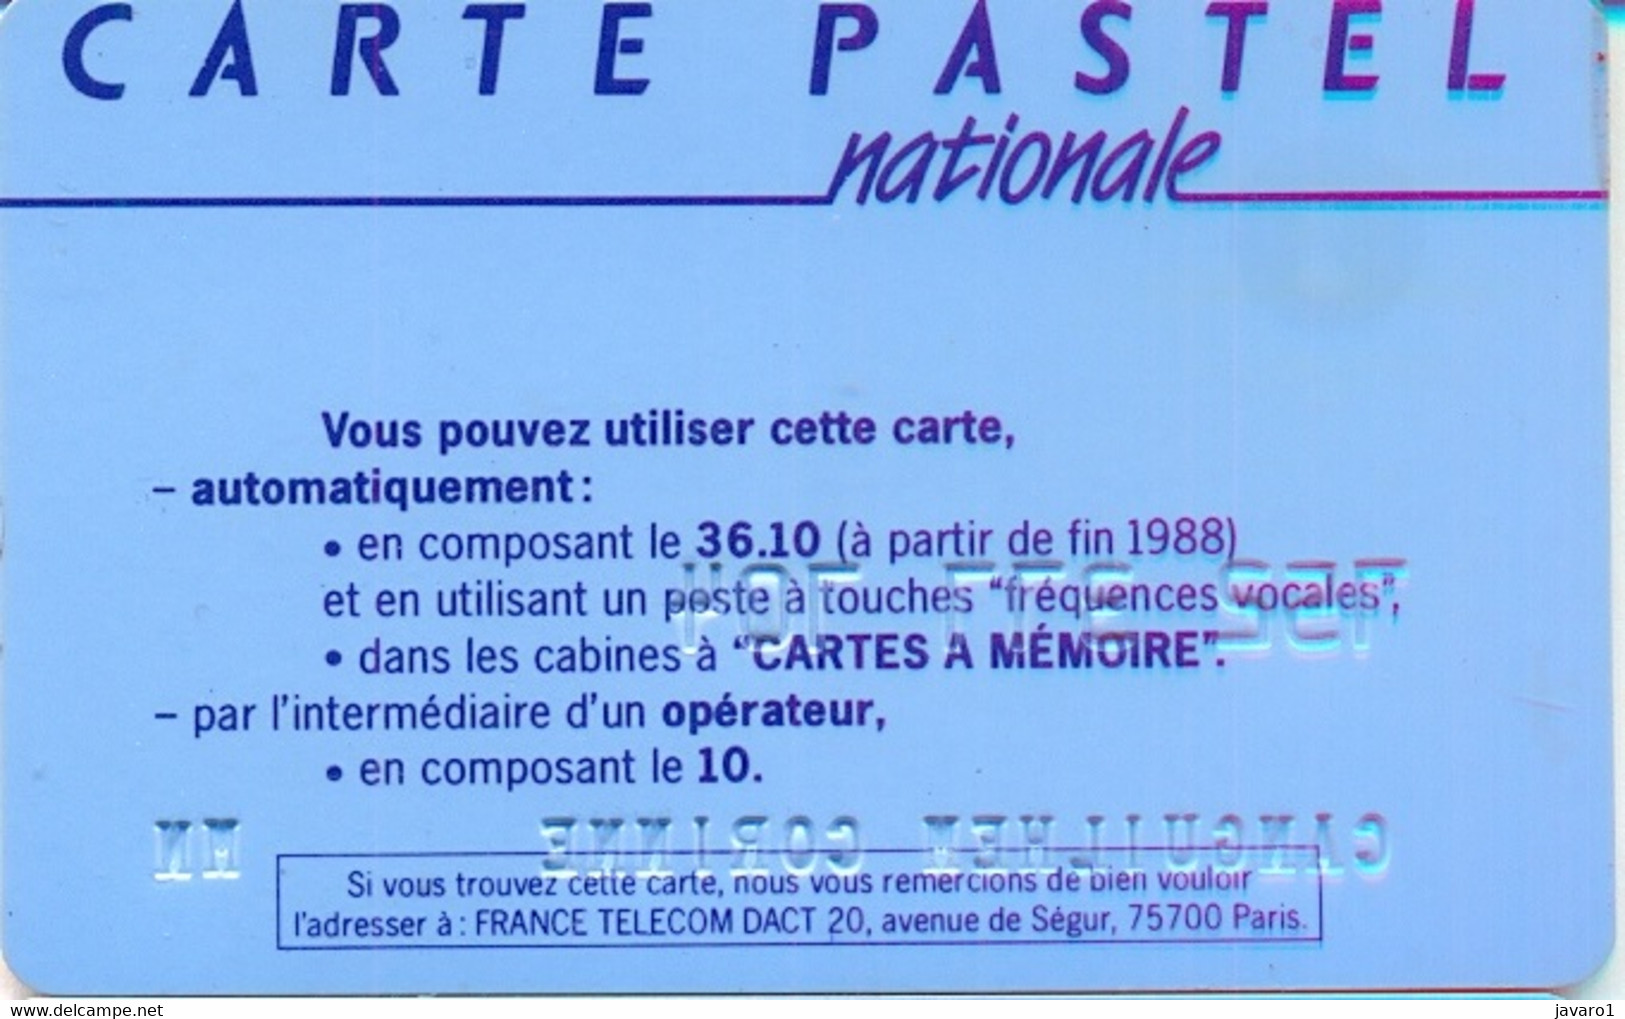 FRANCE : FRA17 CARTE PASTEL NATIONALE BULL Big-1 Reverse 2 USED -  Cartes Pastel   